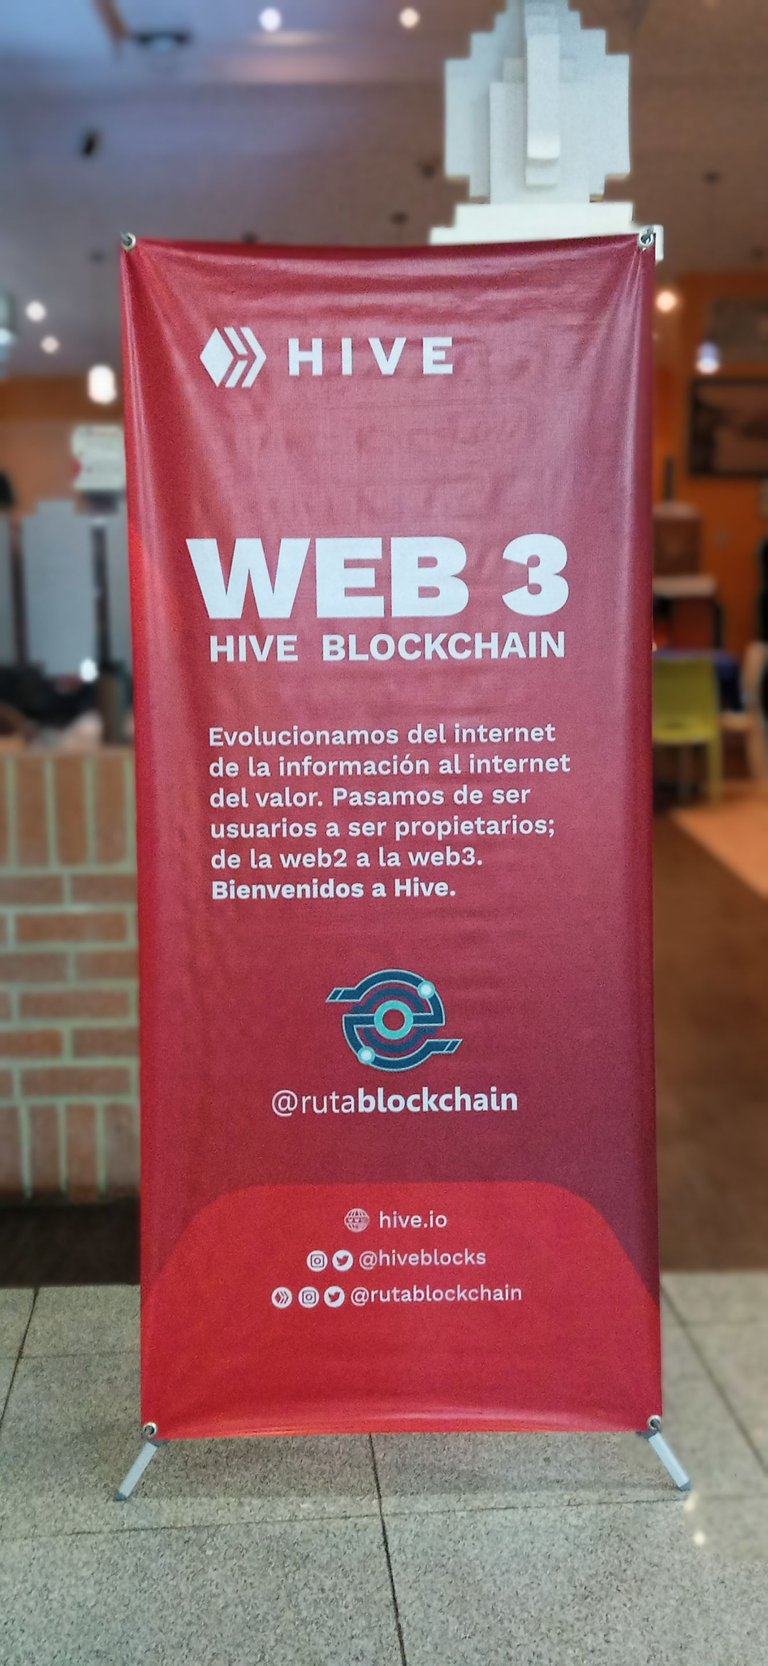 Hive Blockchain Meet Up Web 3 acont